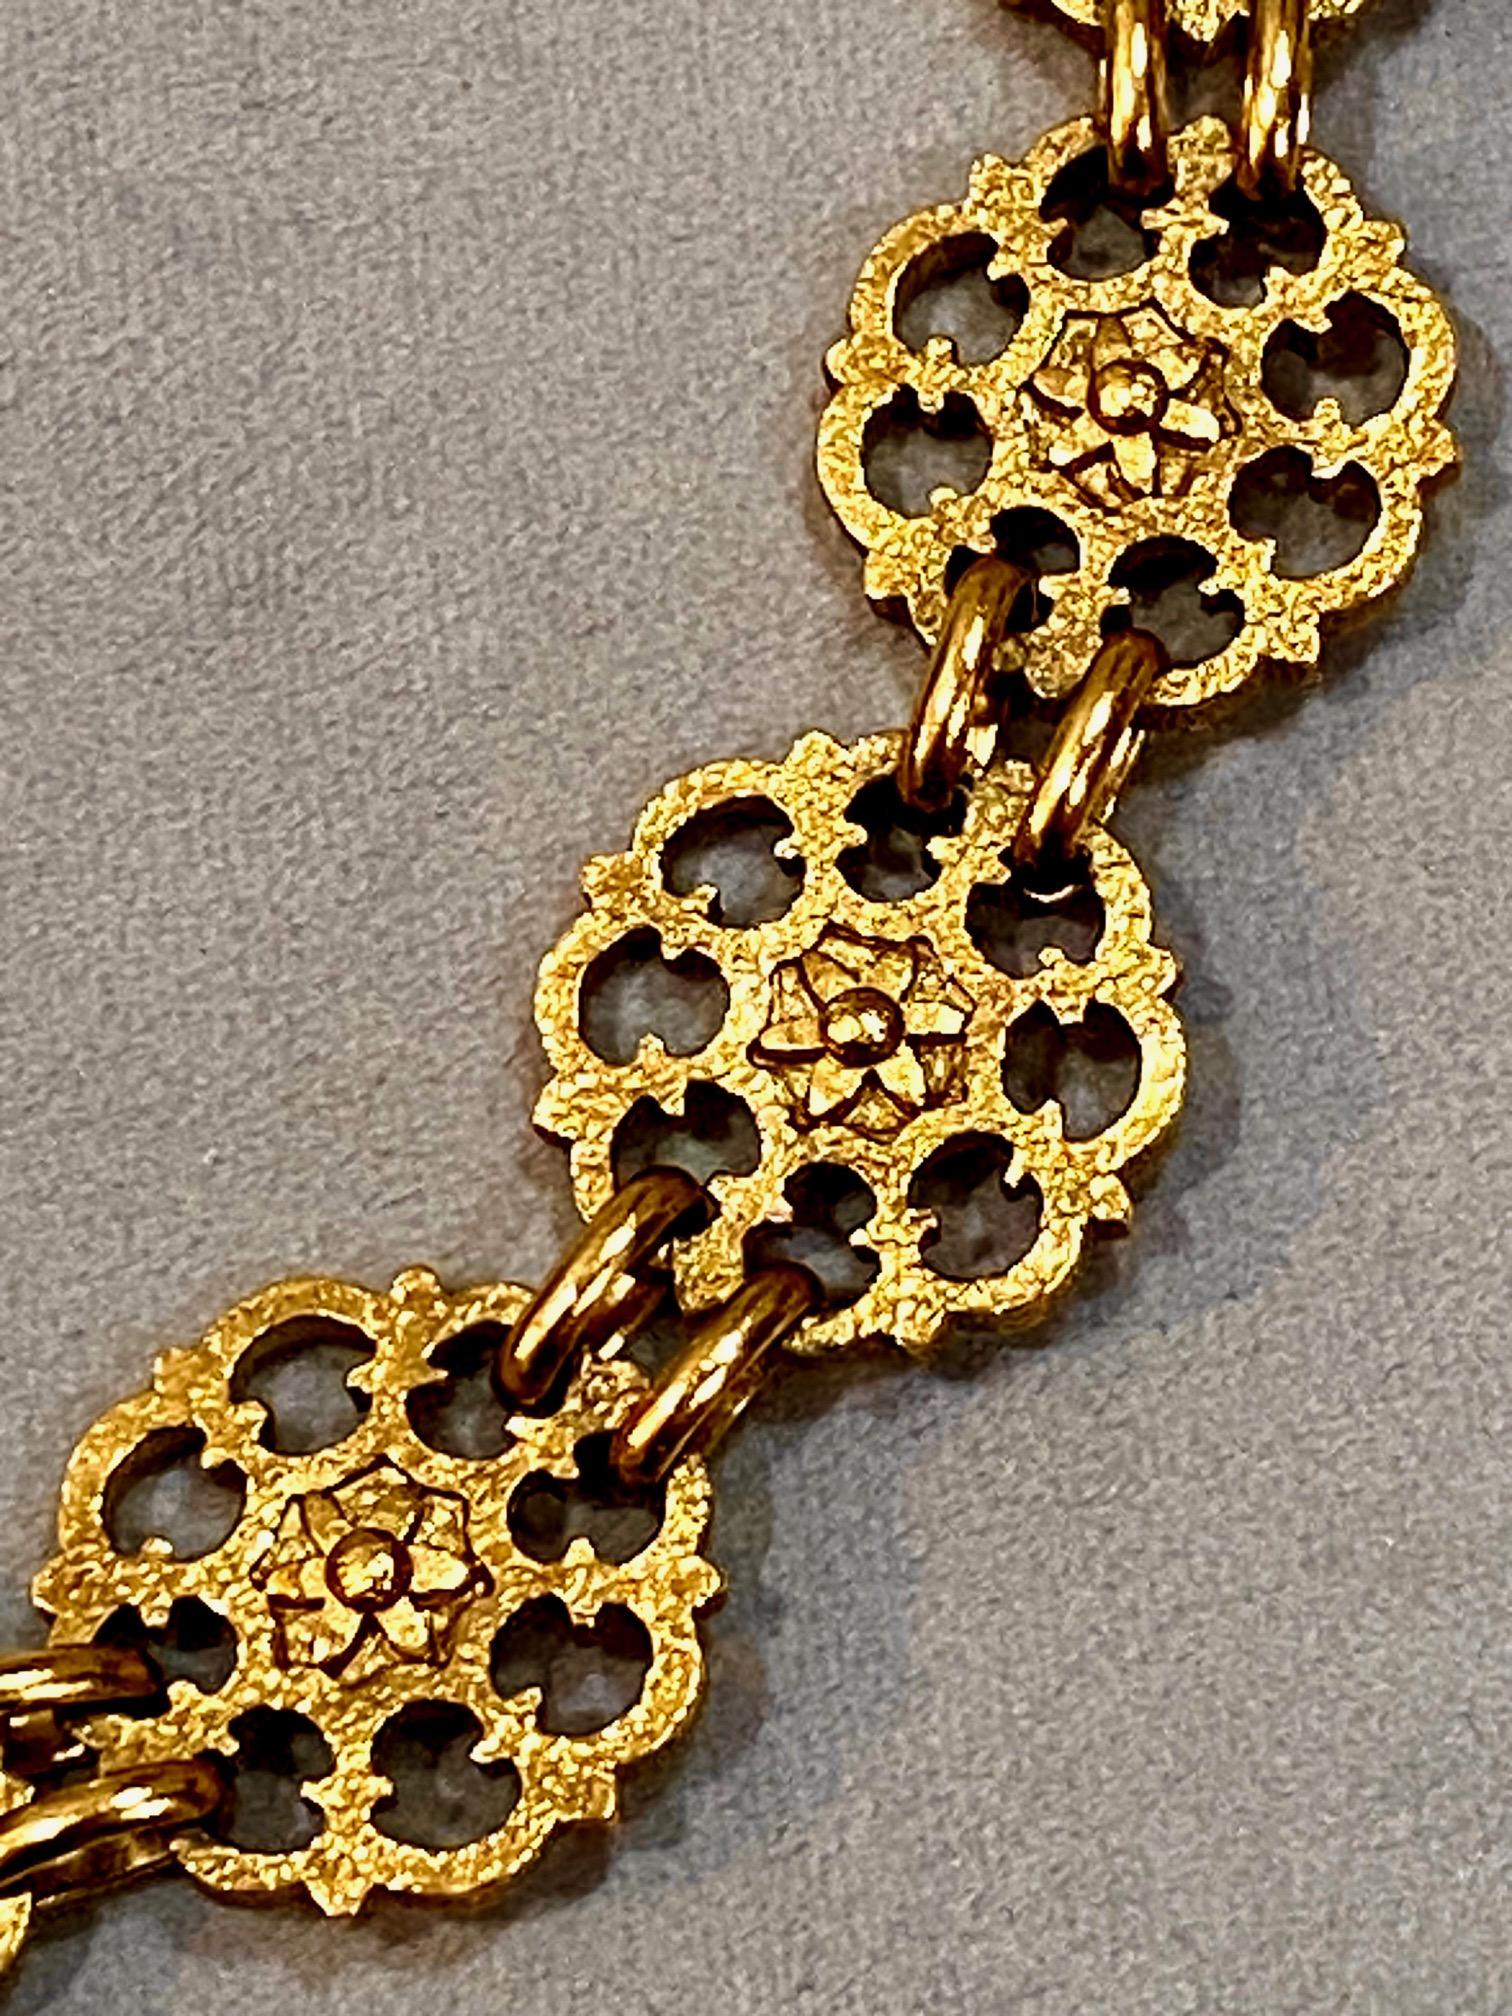 Yves Saint Laurent, Rive Gauche, 1980s Gold Belt / Necklace For Sale 6